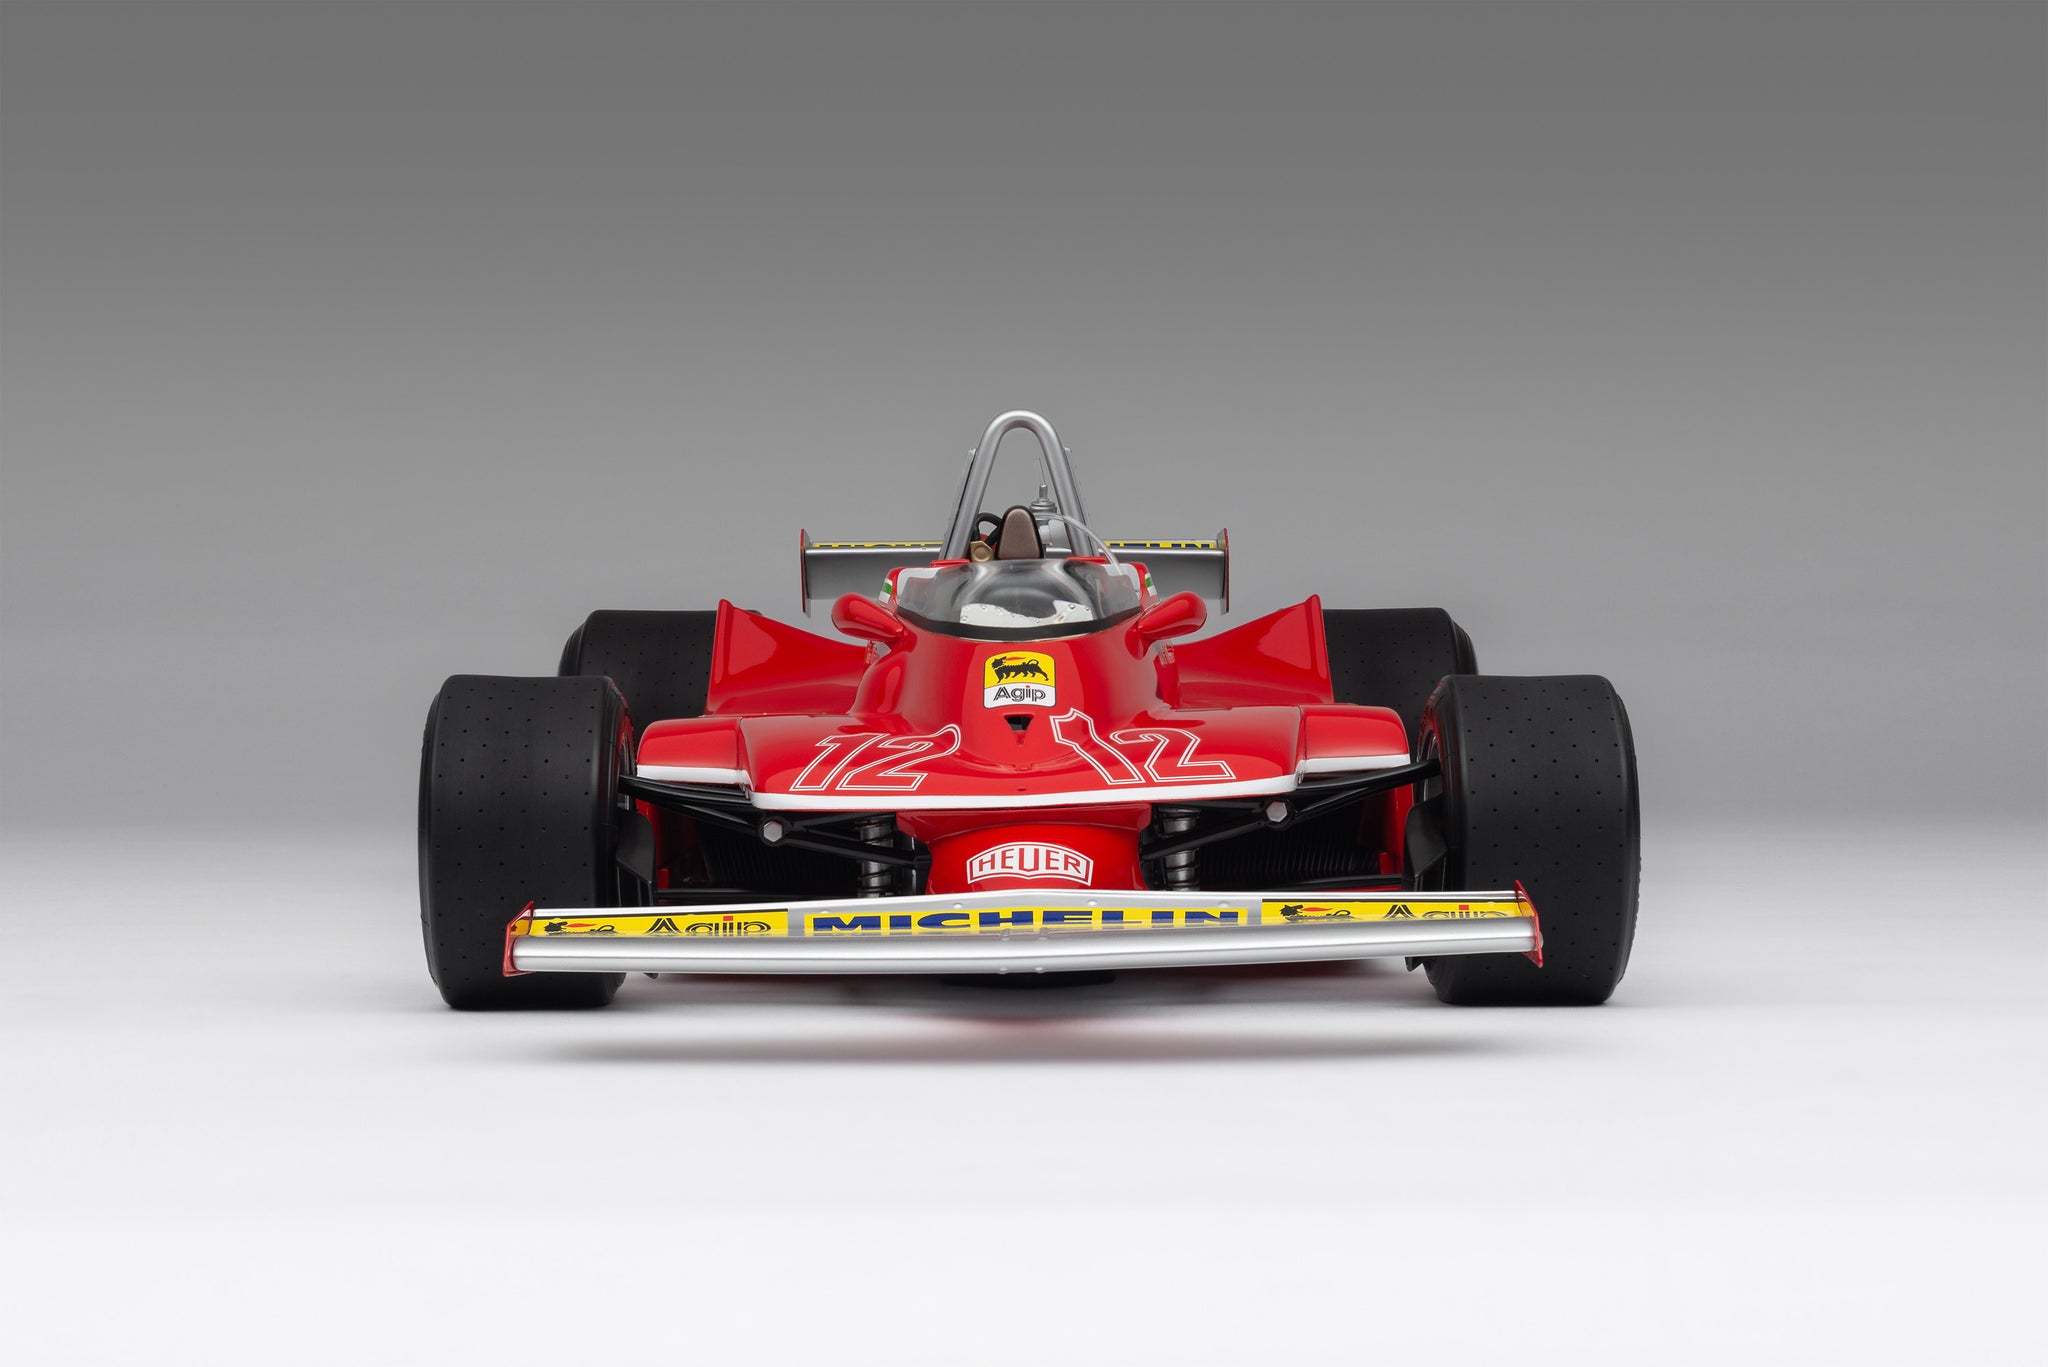 Ferrari 312 T4 at 1:8 scale